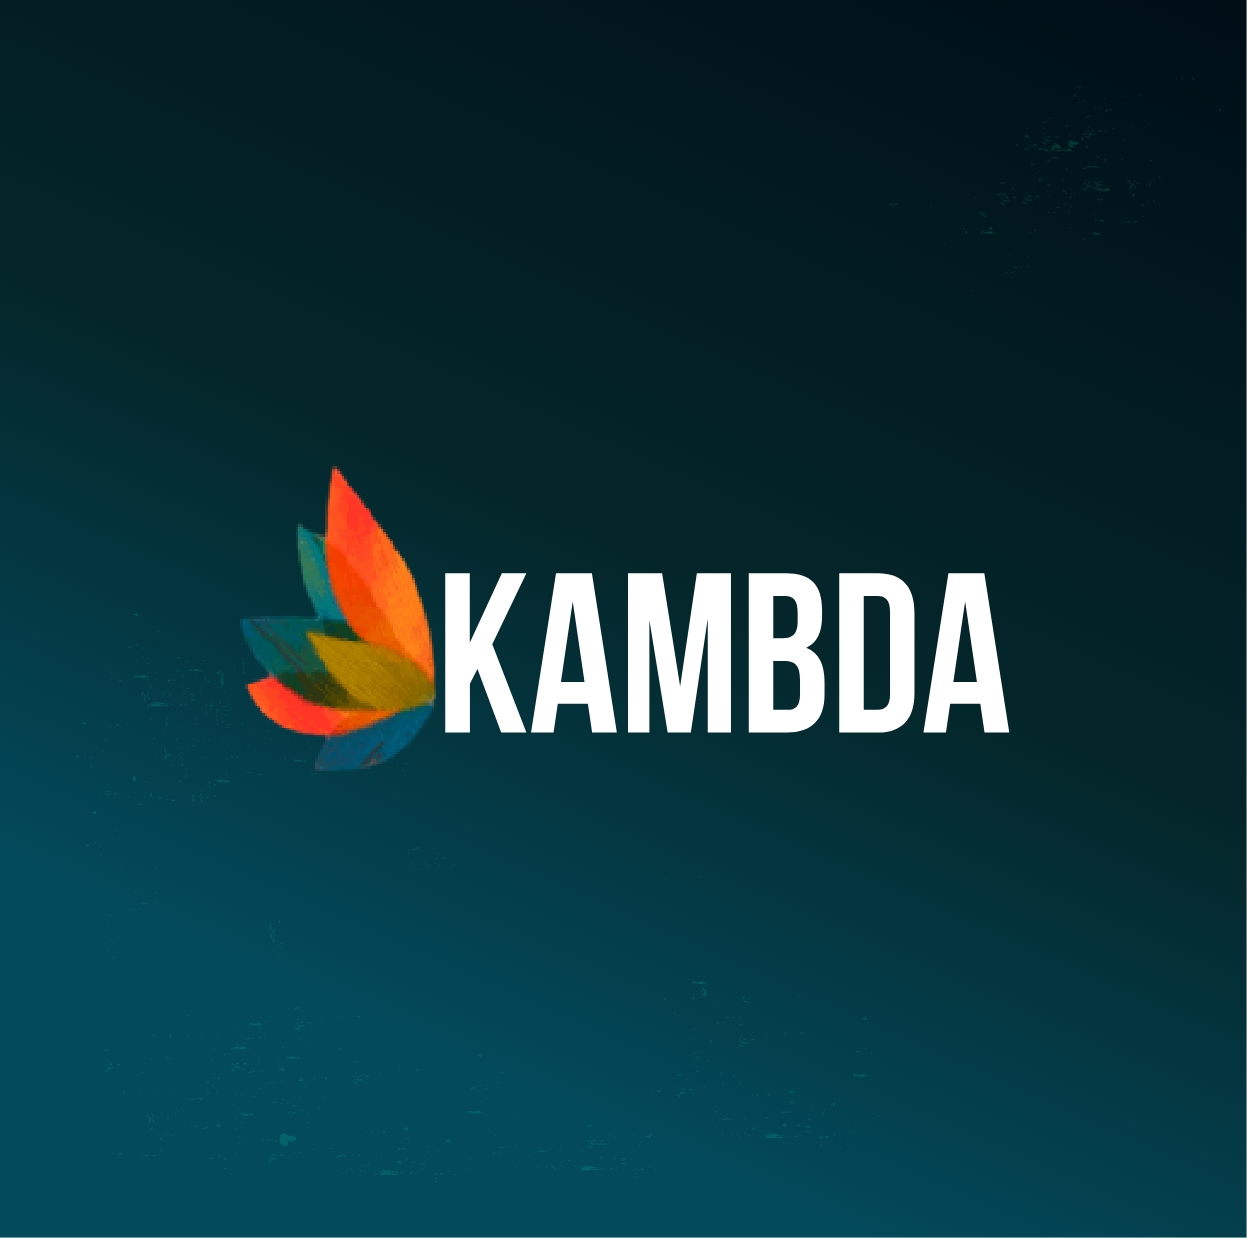 Kambda Company logo